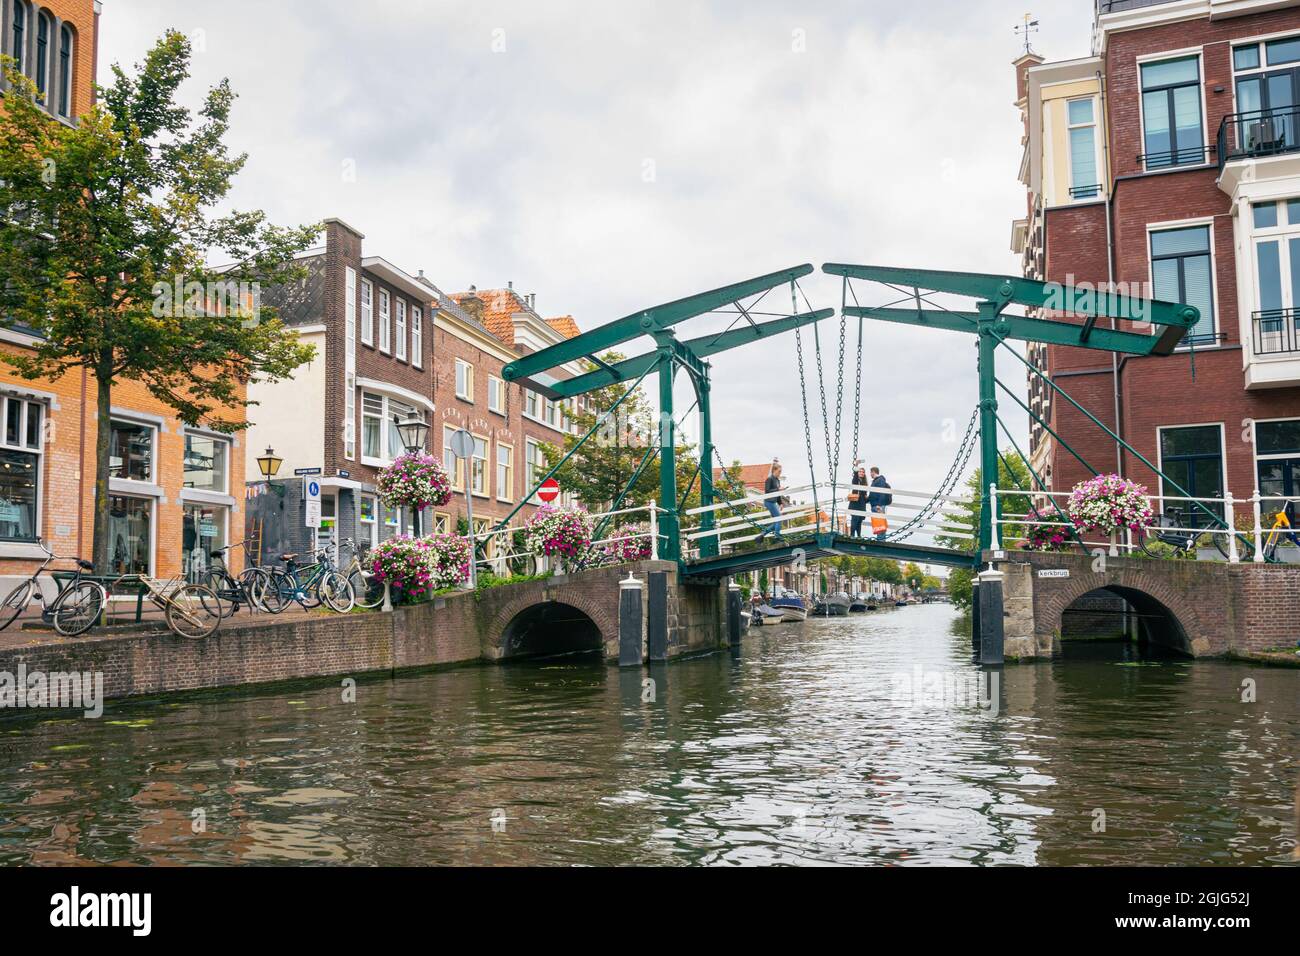 Escena clásica holandesa de la ciudad con puente levadizo y casas a lo largo de un canal. Foto de stock